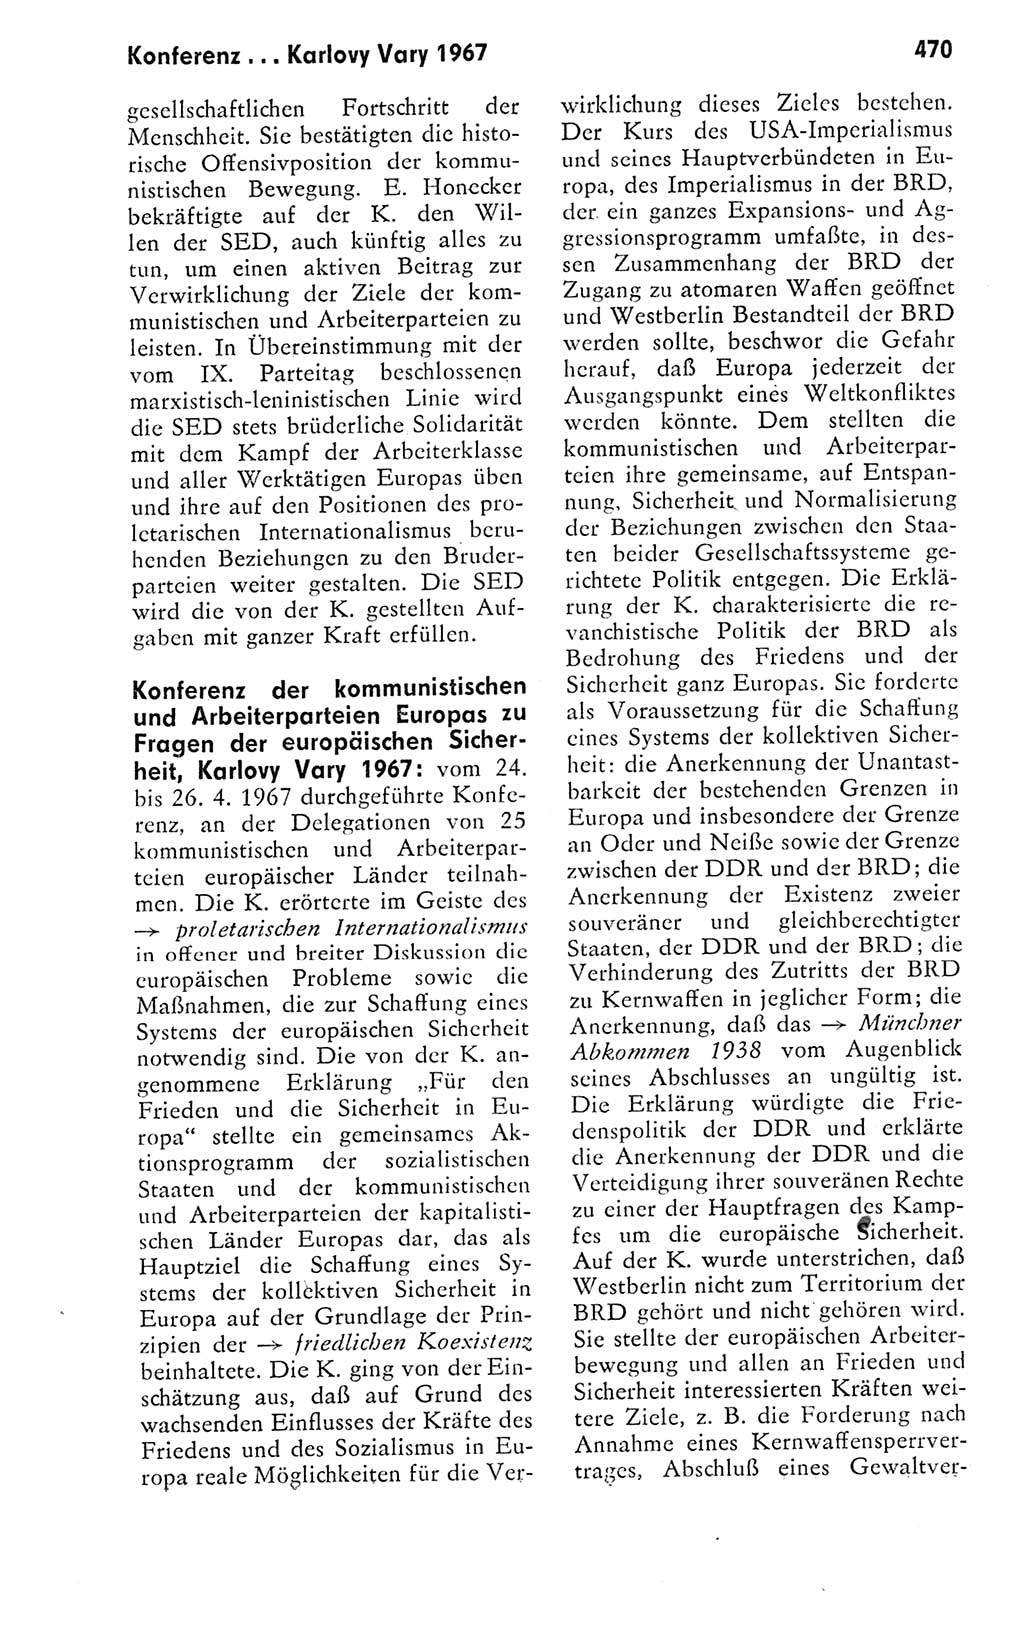 Kleines politisches Wörterbuch [Deutsche Demokratische Republik (DDR)] 1978, Seite 470 (Kl. pol. Wb. DDR 1978, S. 470)